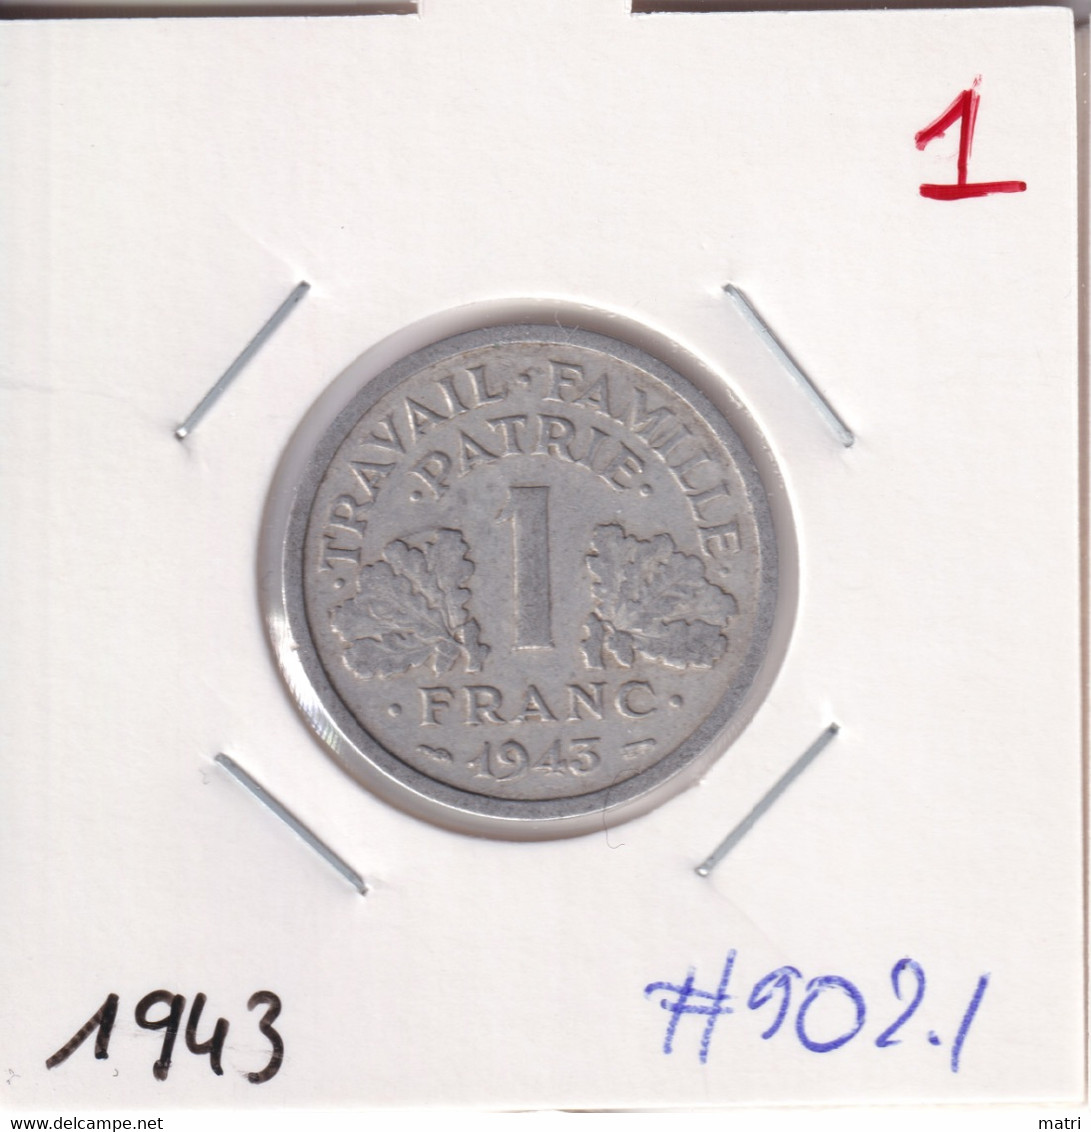 France 1 Franc 1943 Km#902.1 - 1 Franc